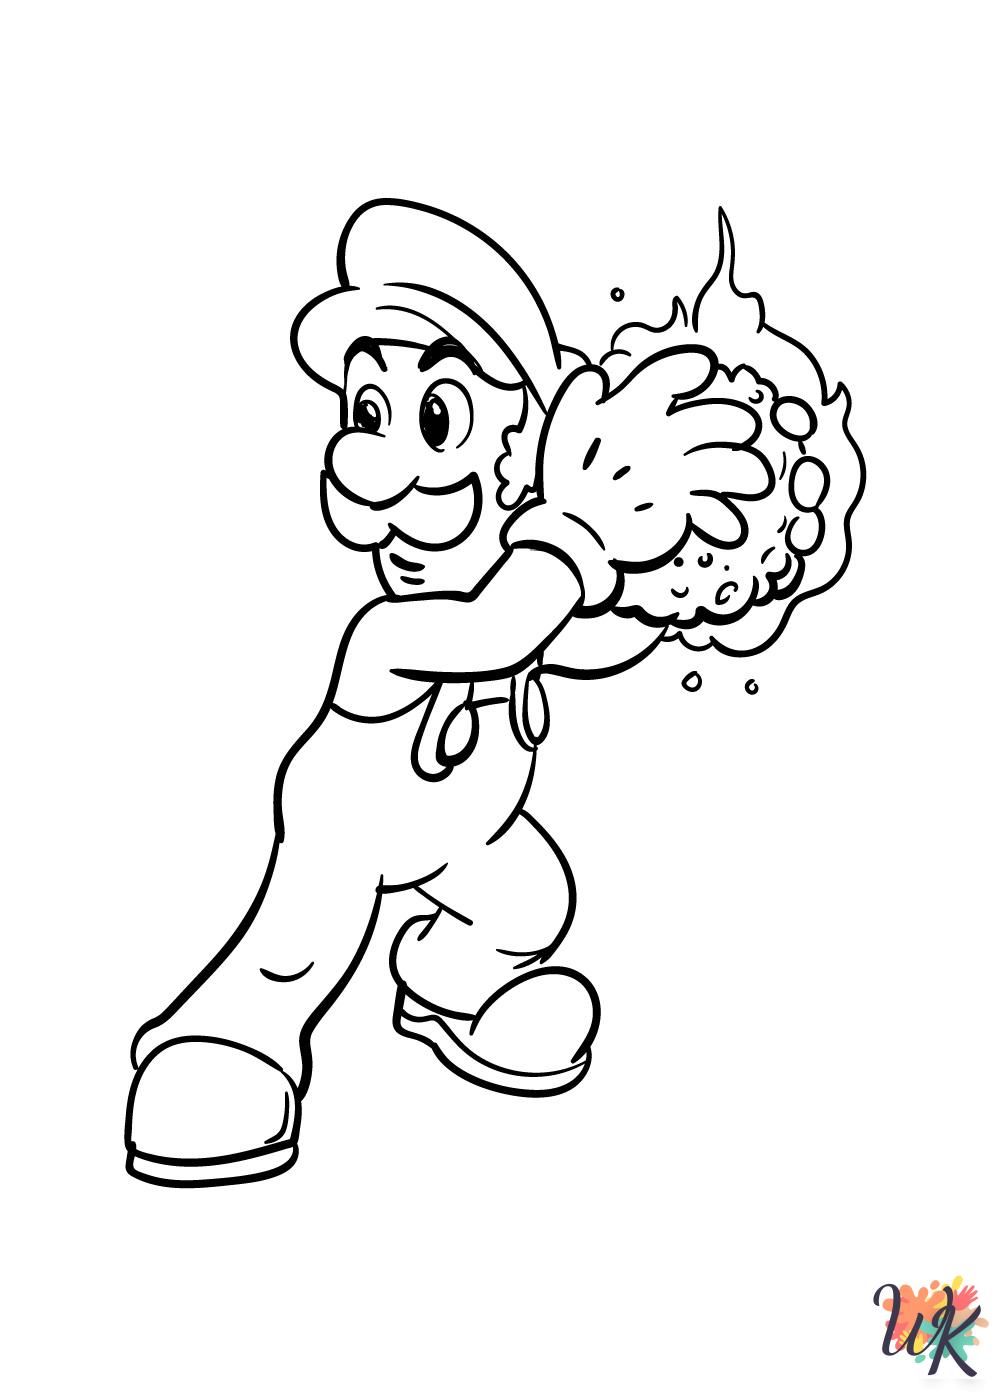 Super Mario Bros coloring pages printable